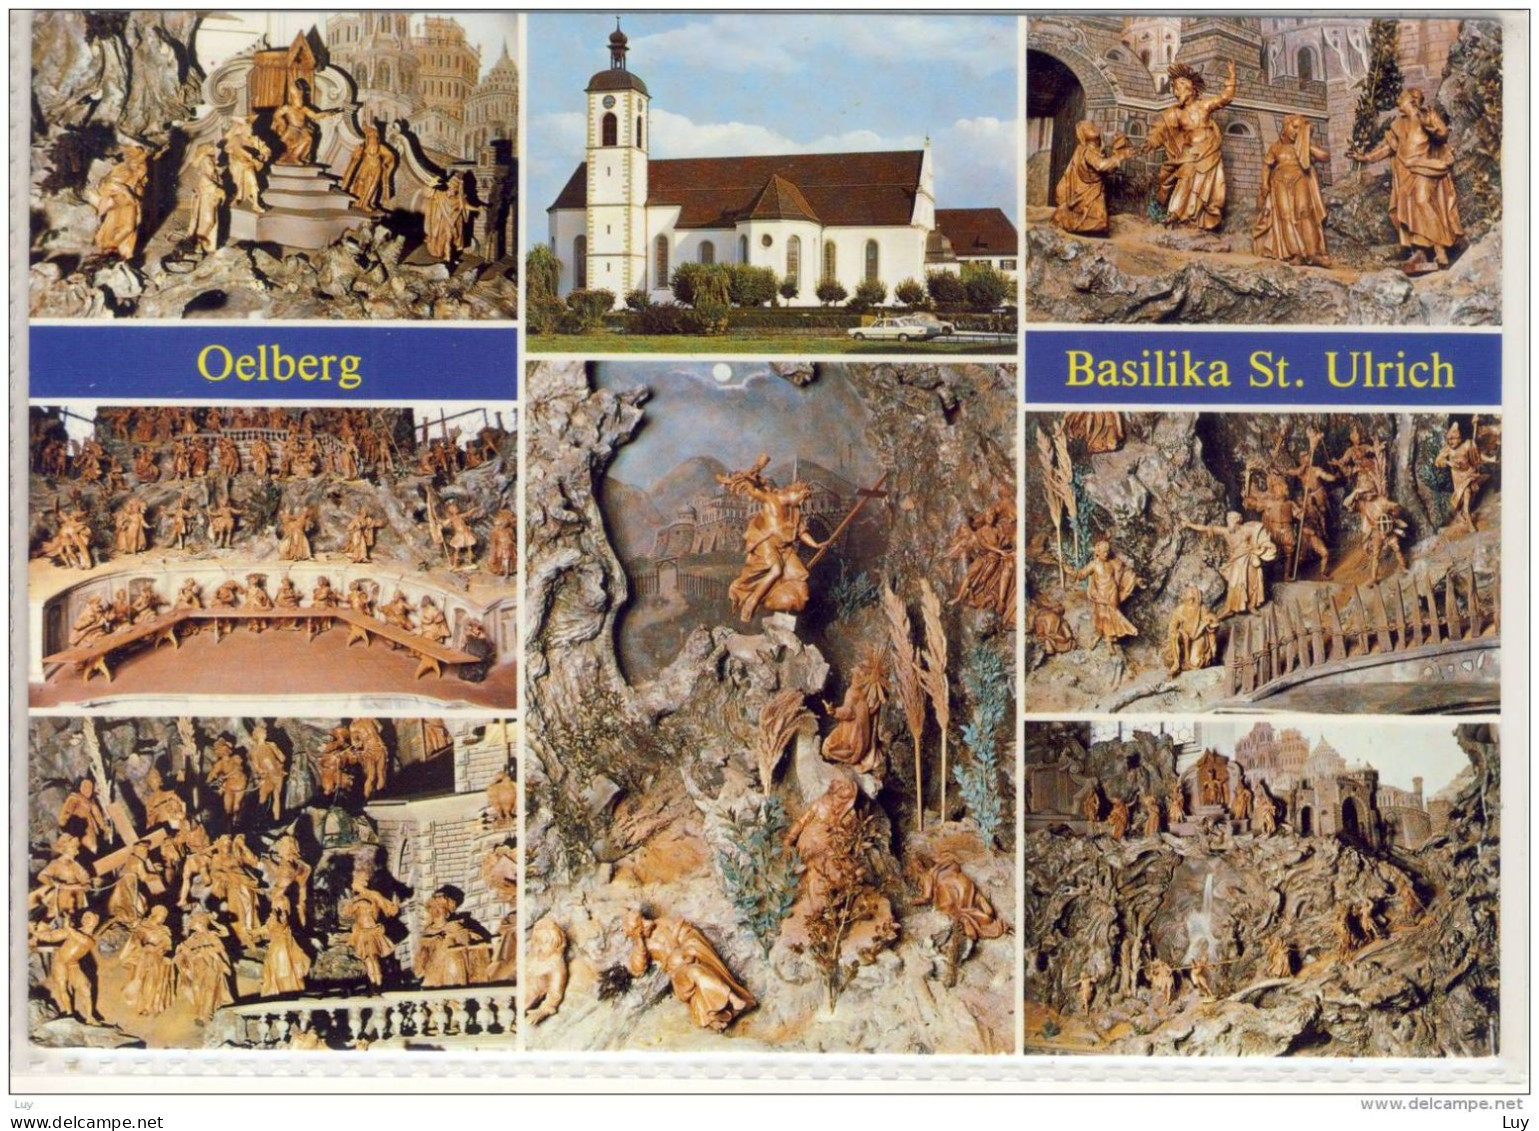 KREUZLINGEN Am Bodnsee Basilika St. Ulrich Oelberg  Schöner Stempel Rheinfall, 1993 - Kreuzlingen